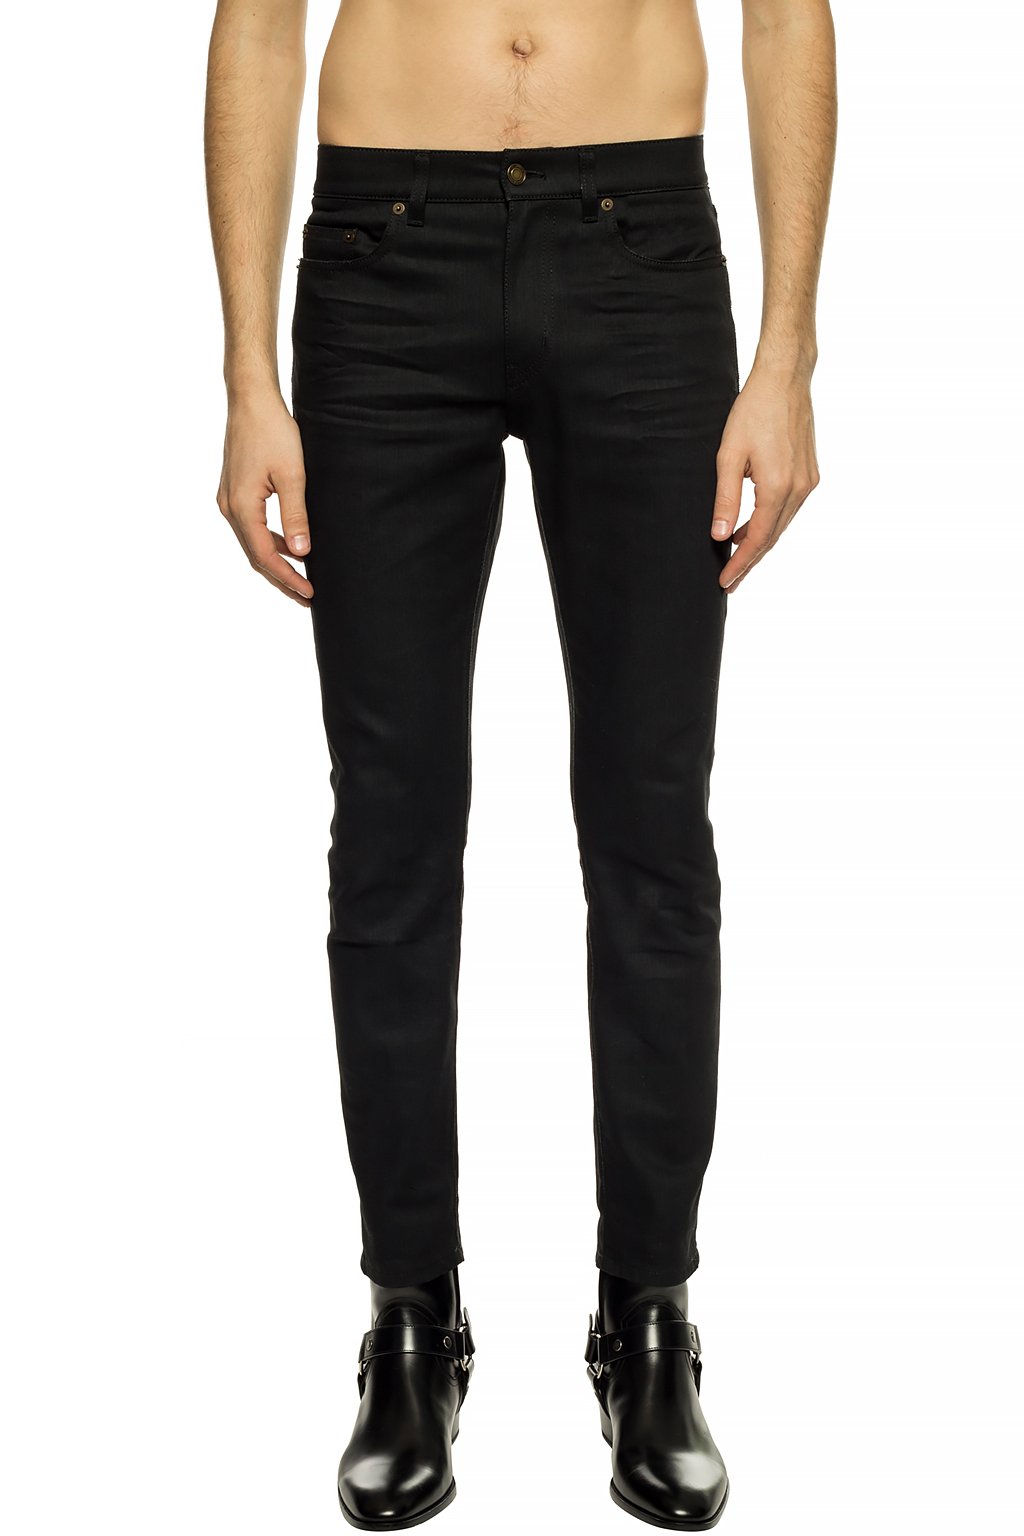 Saint Laurent Jeans with pockets